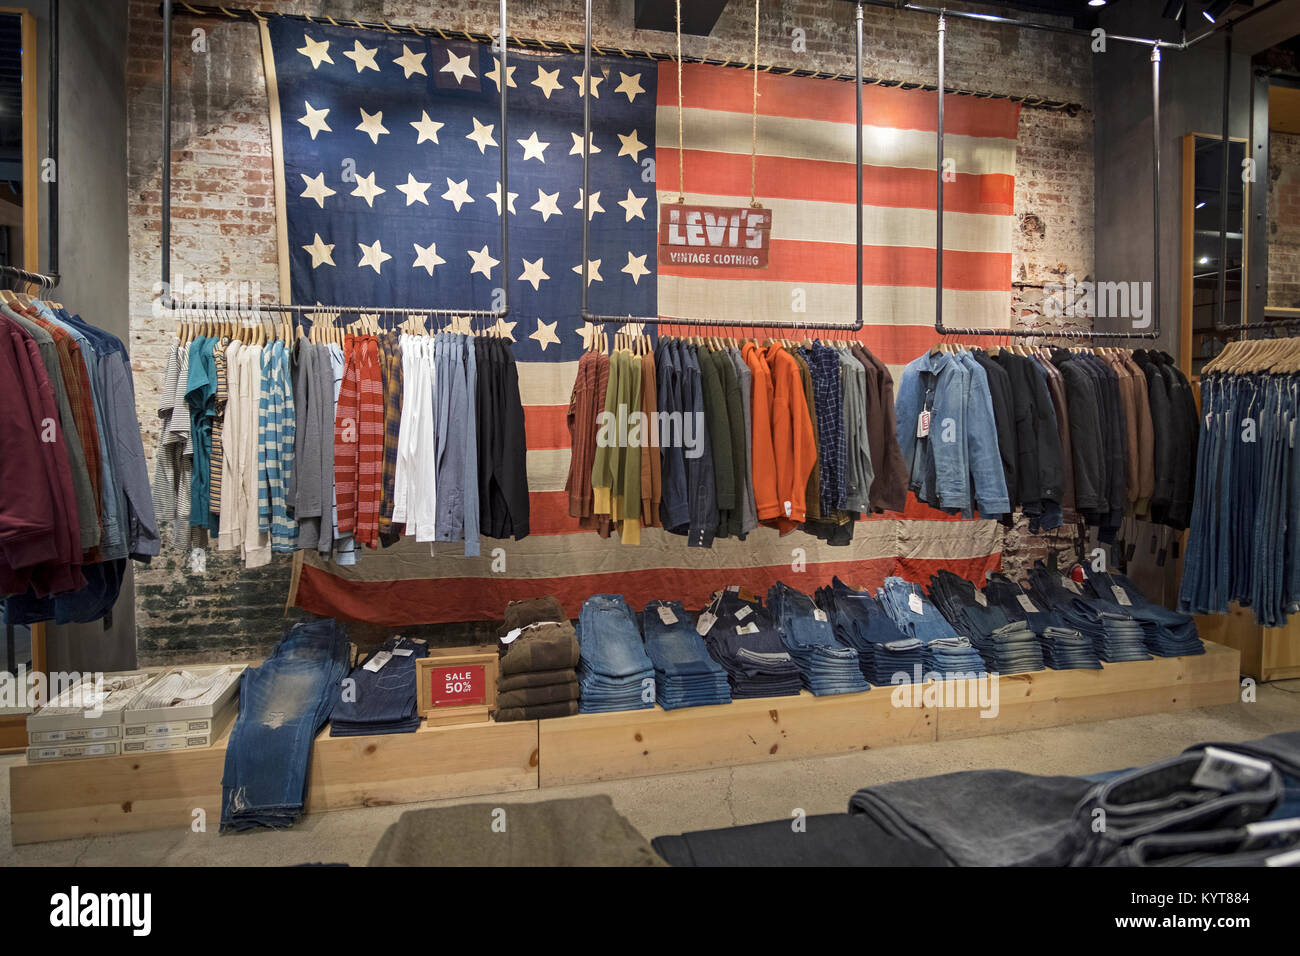 El interior de la tienda Levi's en West 14th Street, en el Meatpacking  District de Manhattan, Ciudad de Nueva York. Con una enorme bandera  Americana Fotografía de stock - Alamy